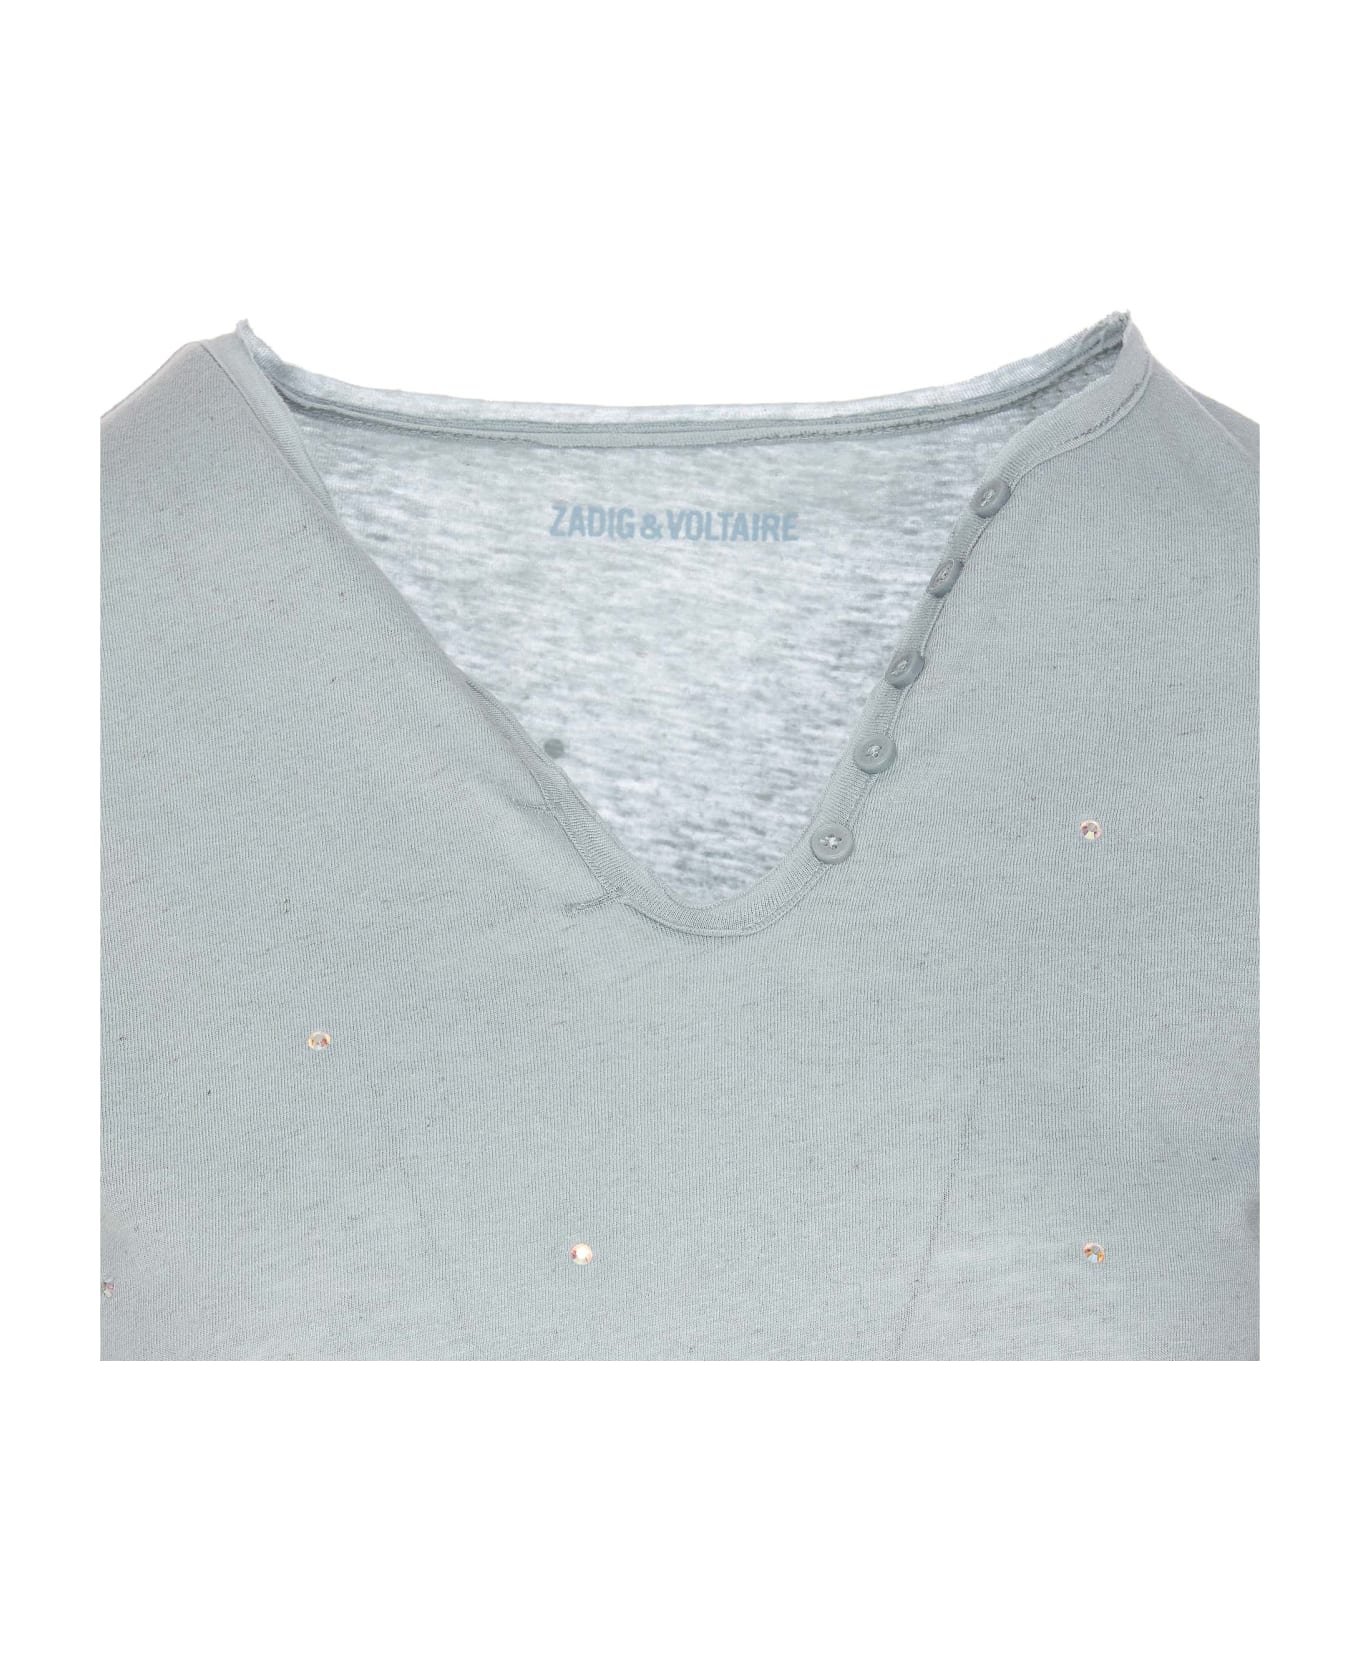 Zadig & Voltaire Tunisien T-shirt - Grey Tシャツ